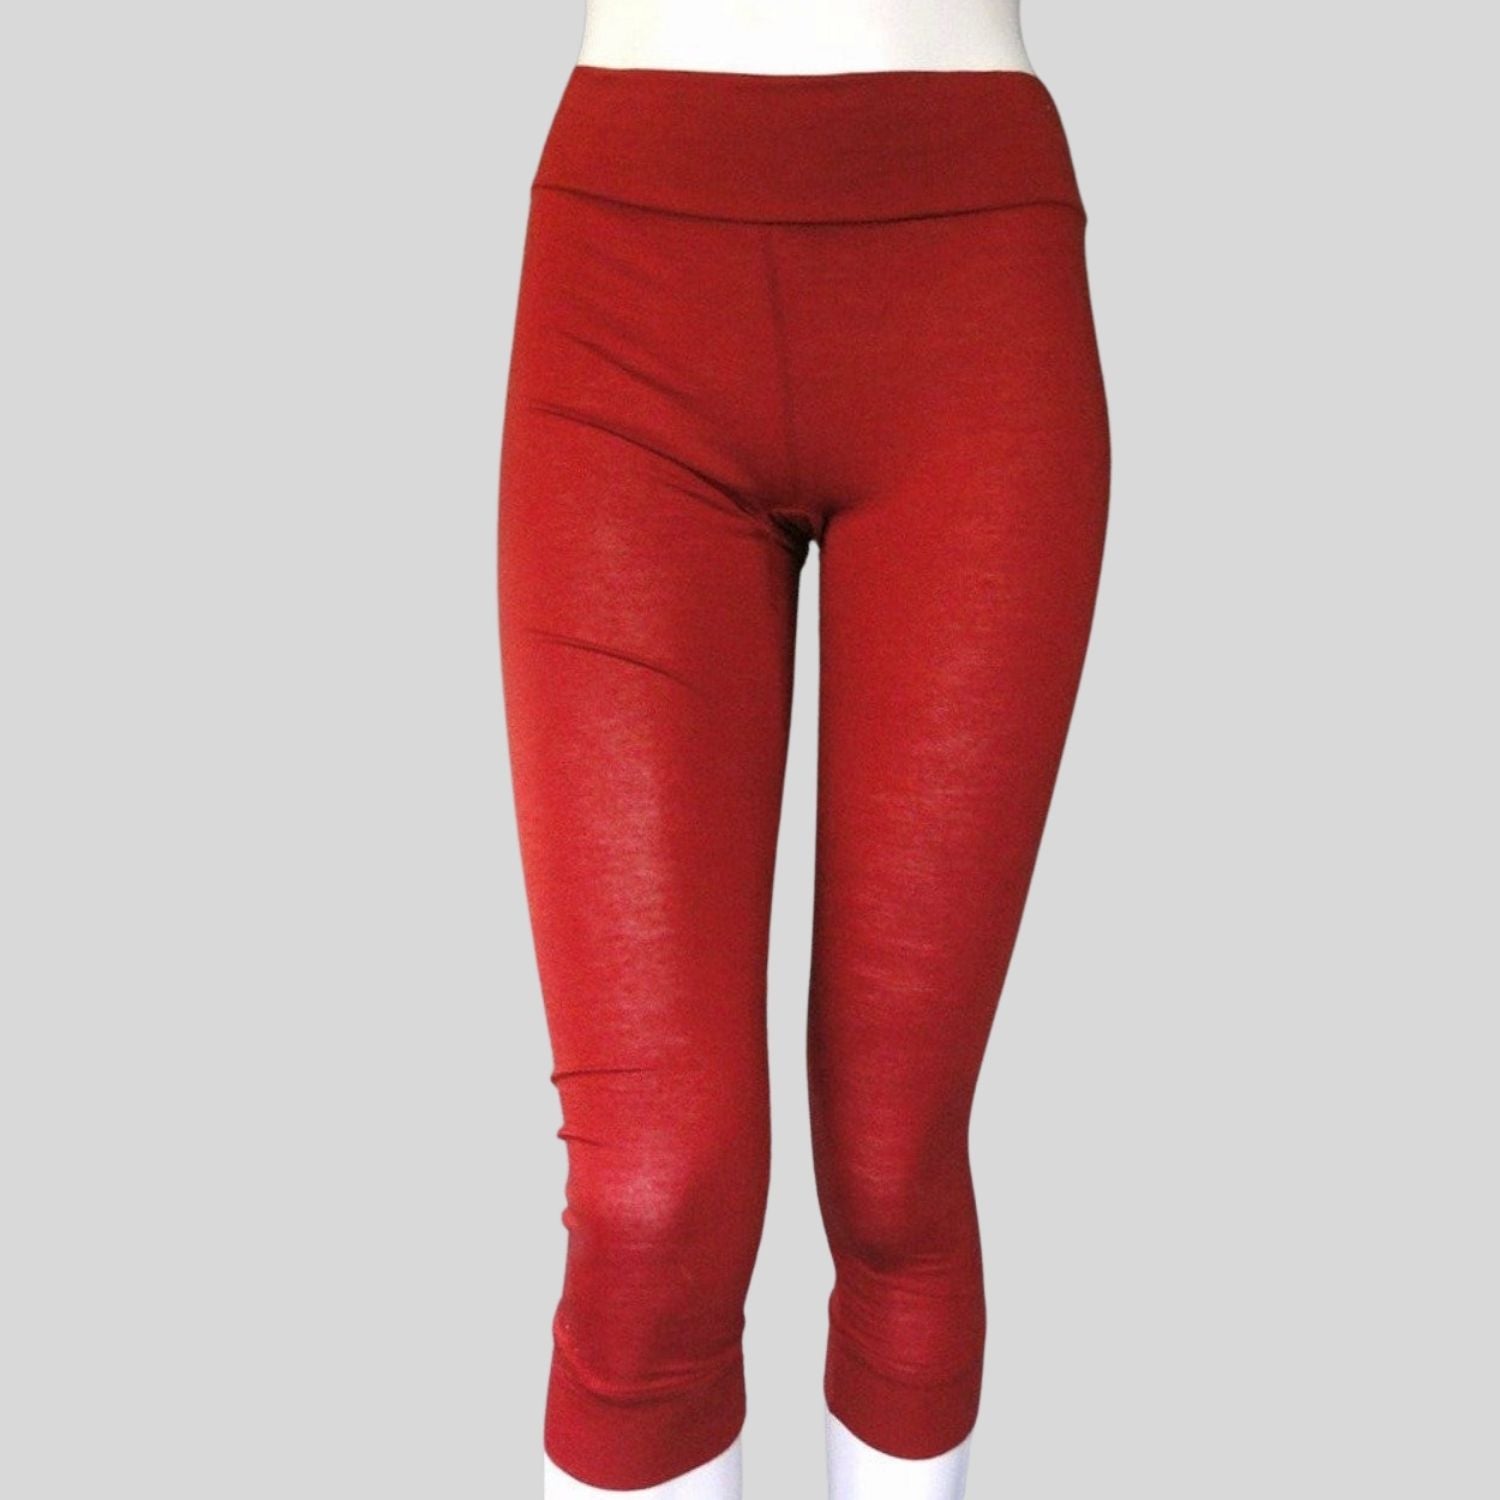 Organic yoga pants, Made in Canada women's leggings